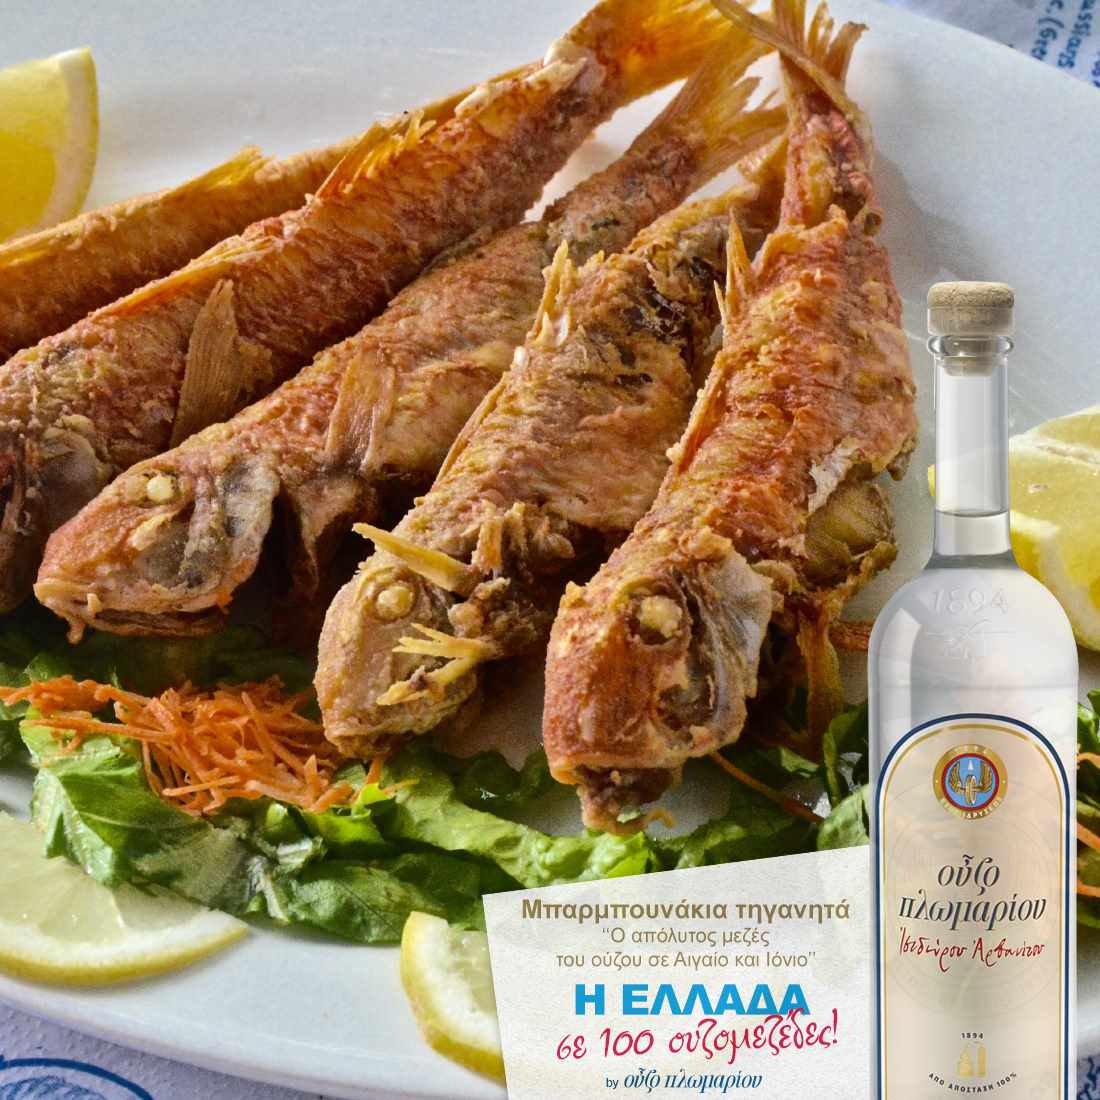 Μπαρμπουνάκια Τηγανητά - Ουζομεζέδες - Greek Gastronomy Guide